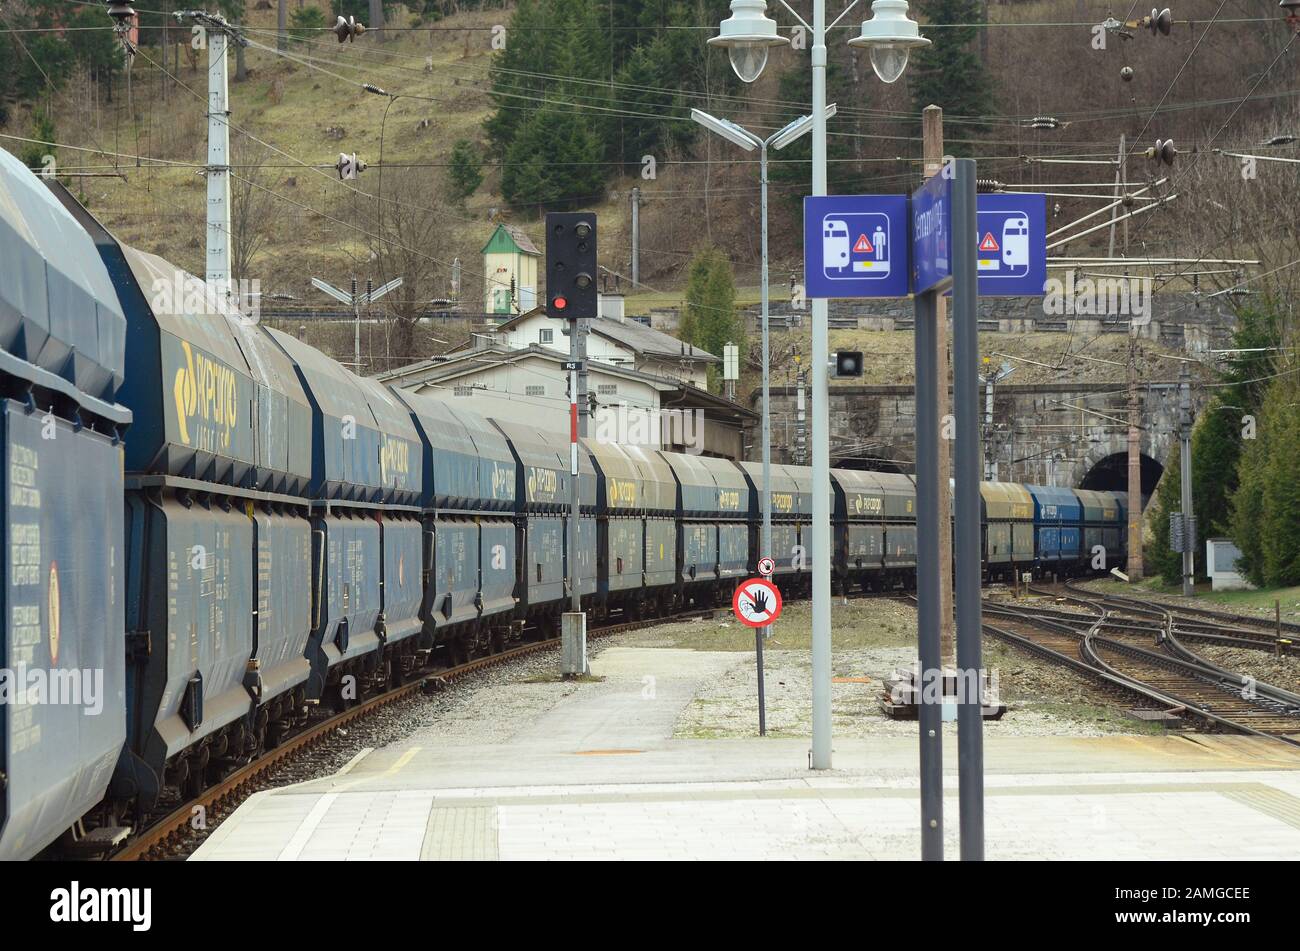 Semmering, Österreich - 22. März 2014: Güterverkehr auf der Semmering-Bahn - älteste Bergbahn Europas und UNESCO-Weltkulturerbe Stockfoto